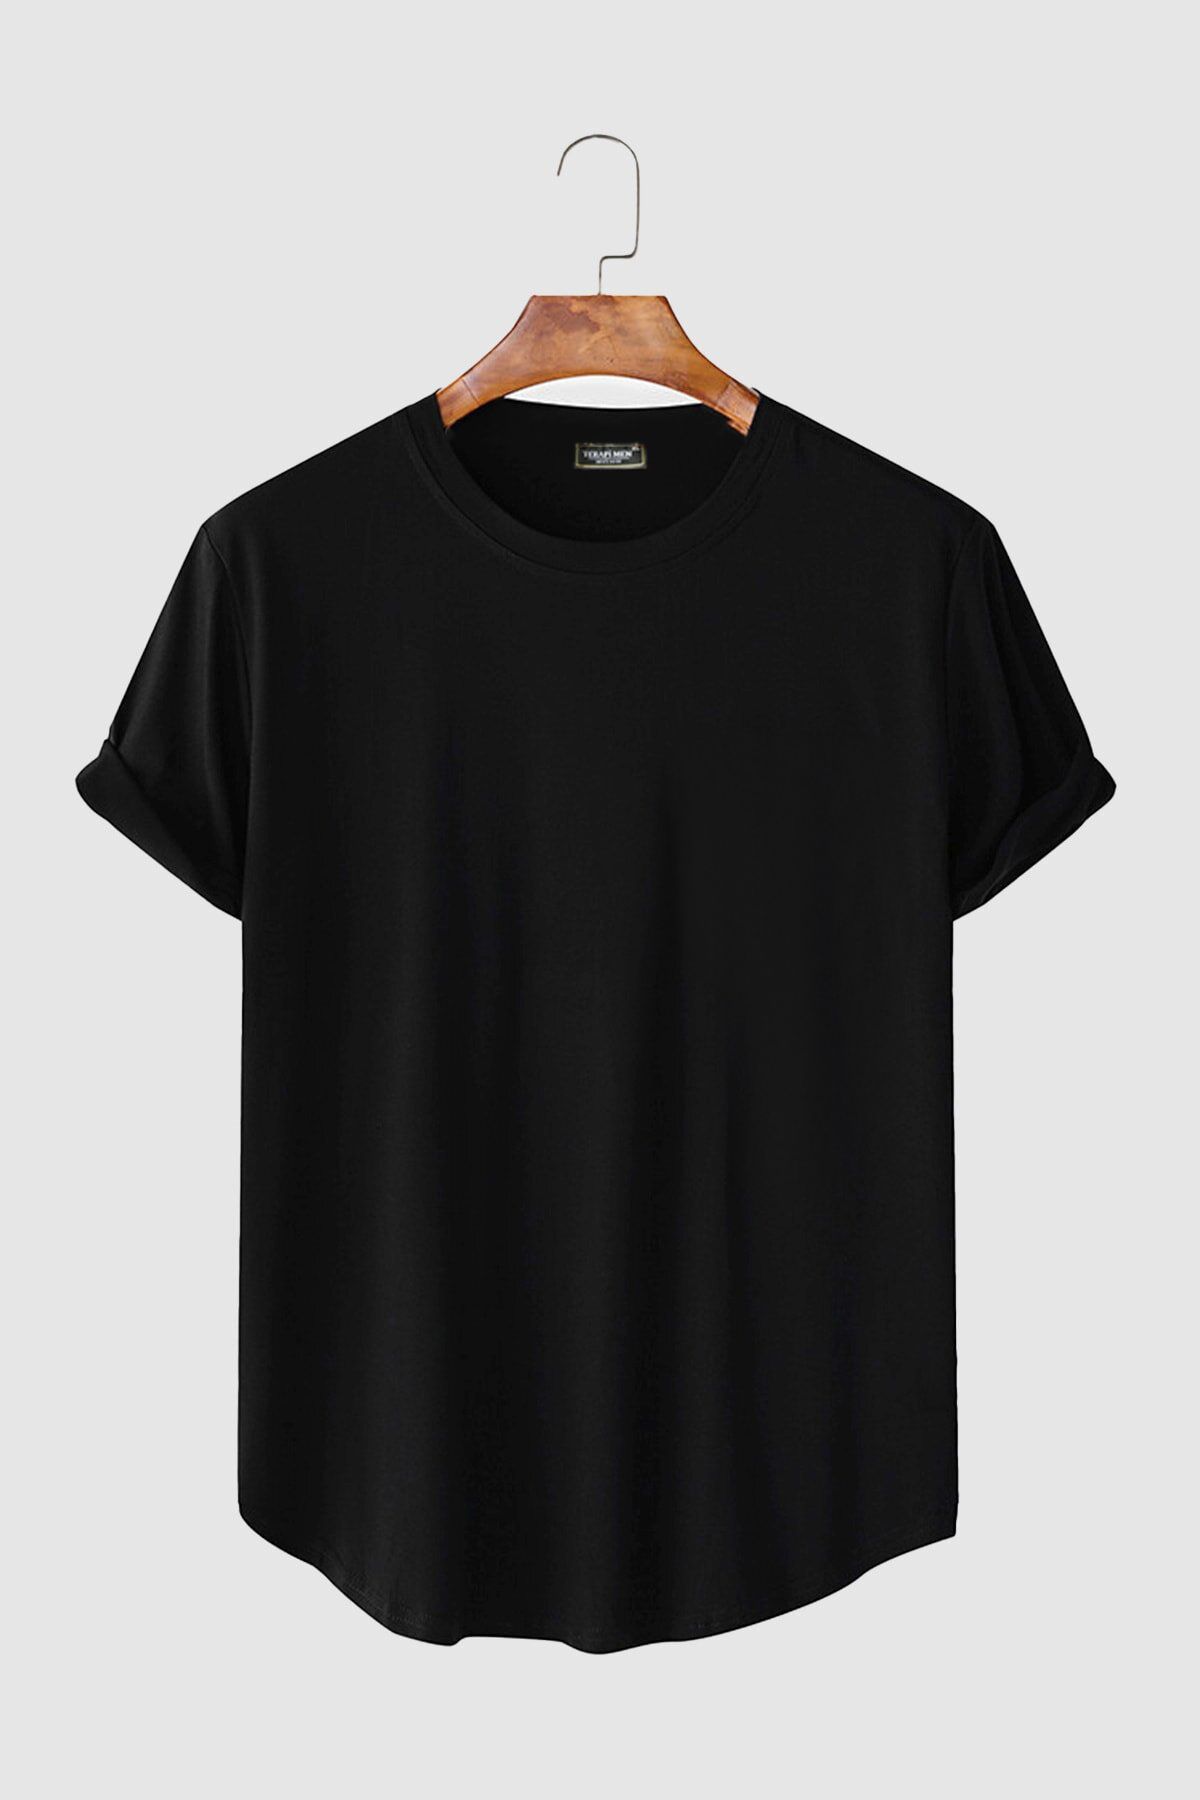 VEAVEN Erkek Siyah Kolları Katlı Oval Kesim Cepsiz Bisiklet Yaka T-shirt Vavn306-0000005-1